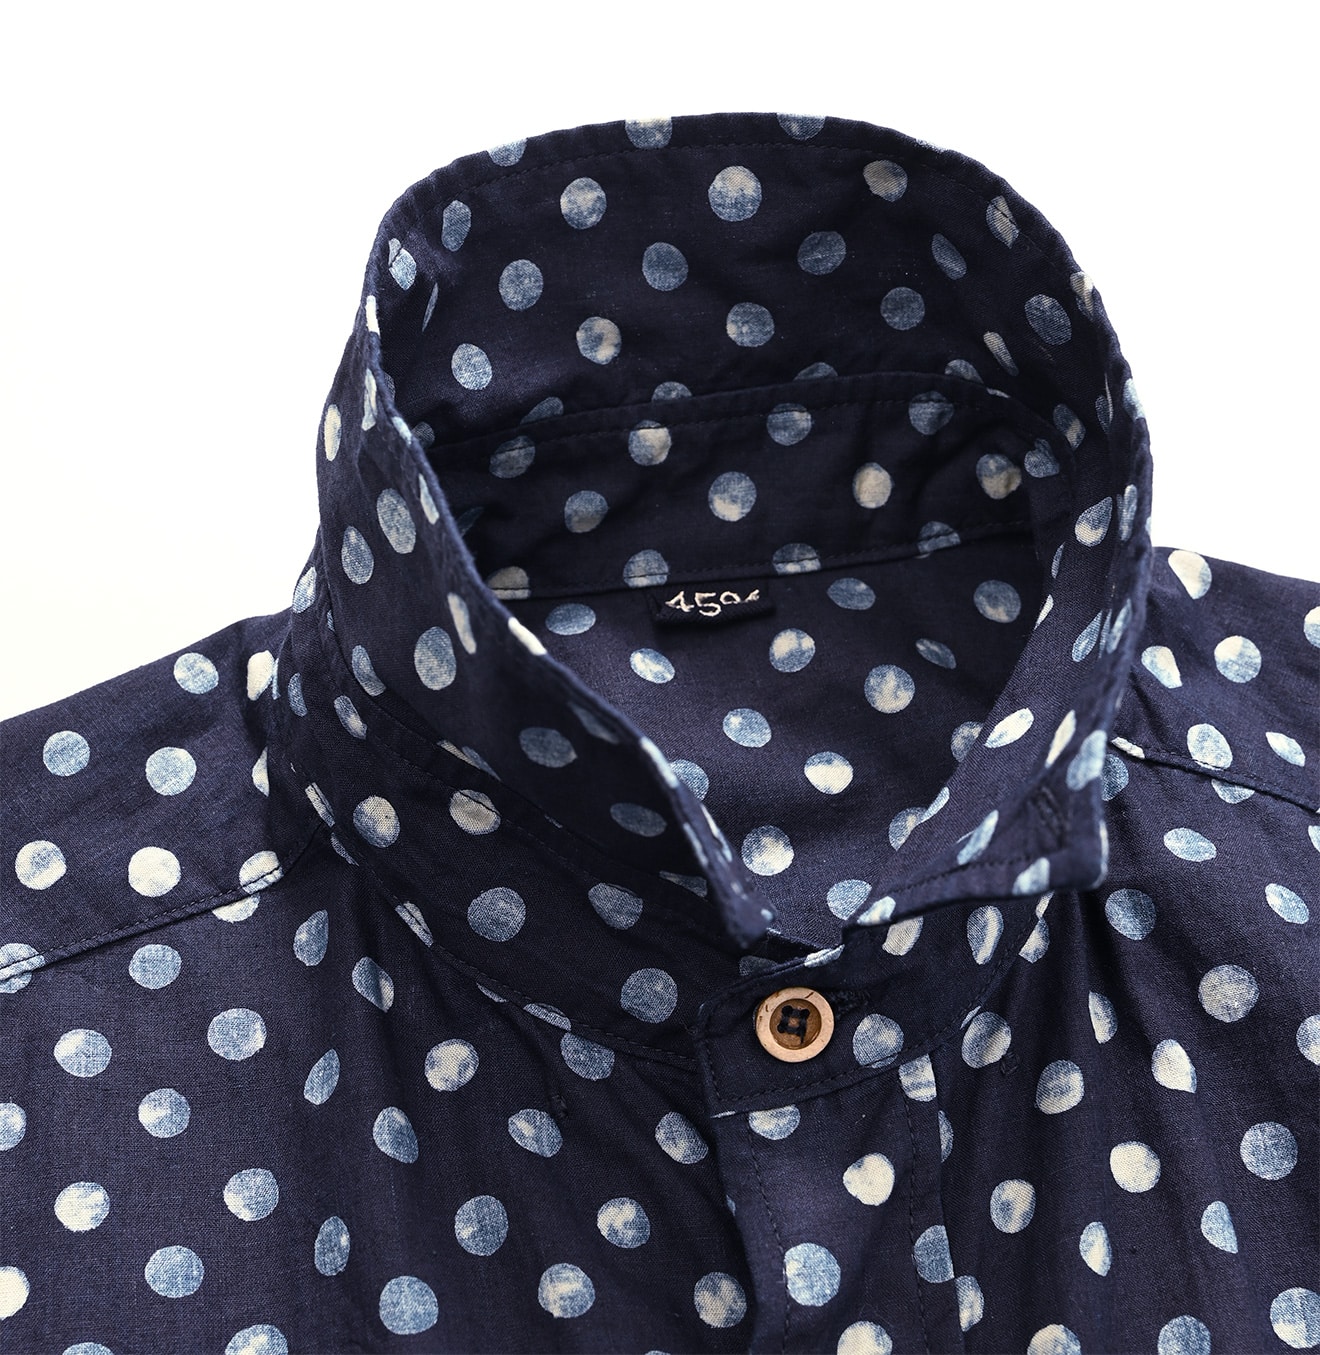 45R 抜染綿ガーゼのシャツ羽織り(3万程で購入)